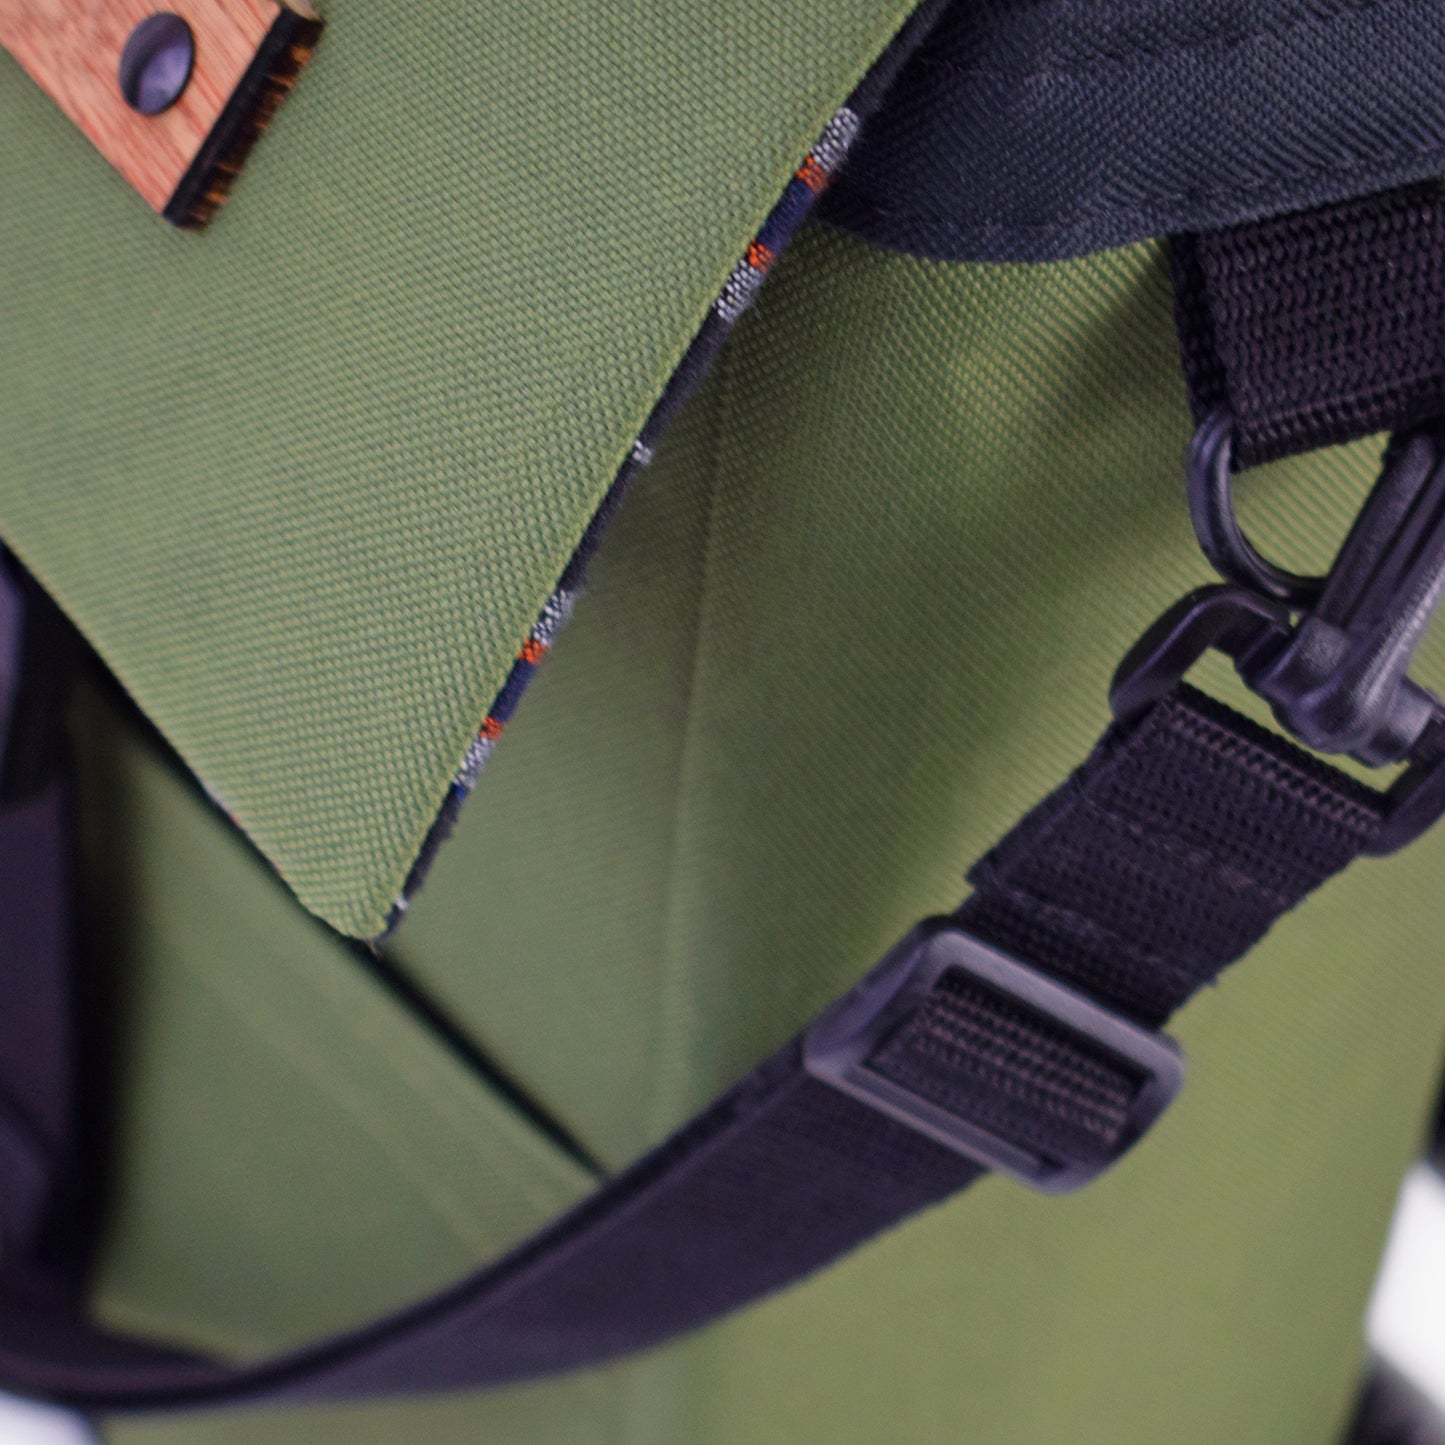 Mini Merchant Backpack | OLIVE GREEN